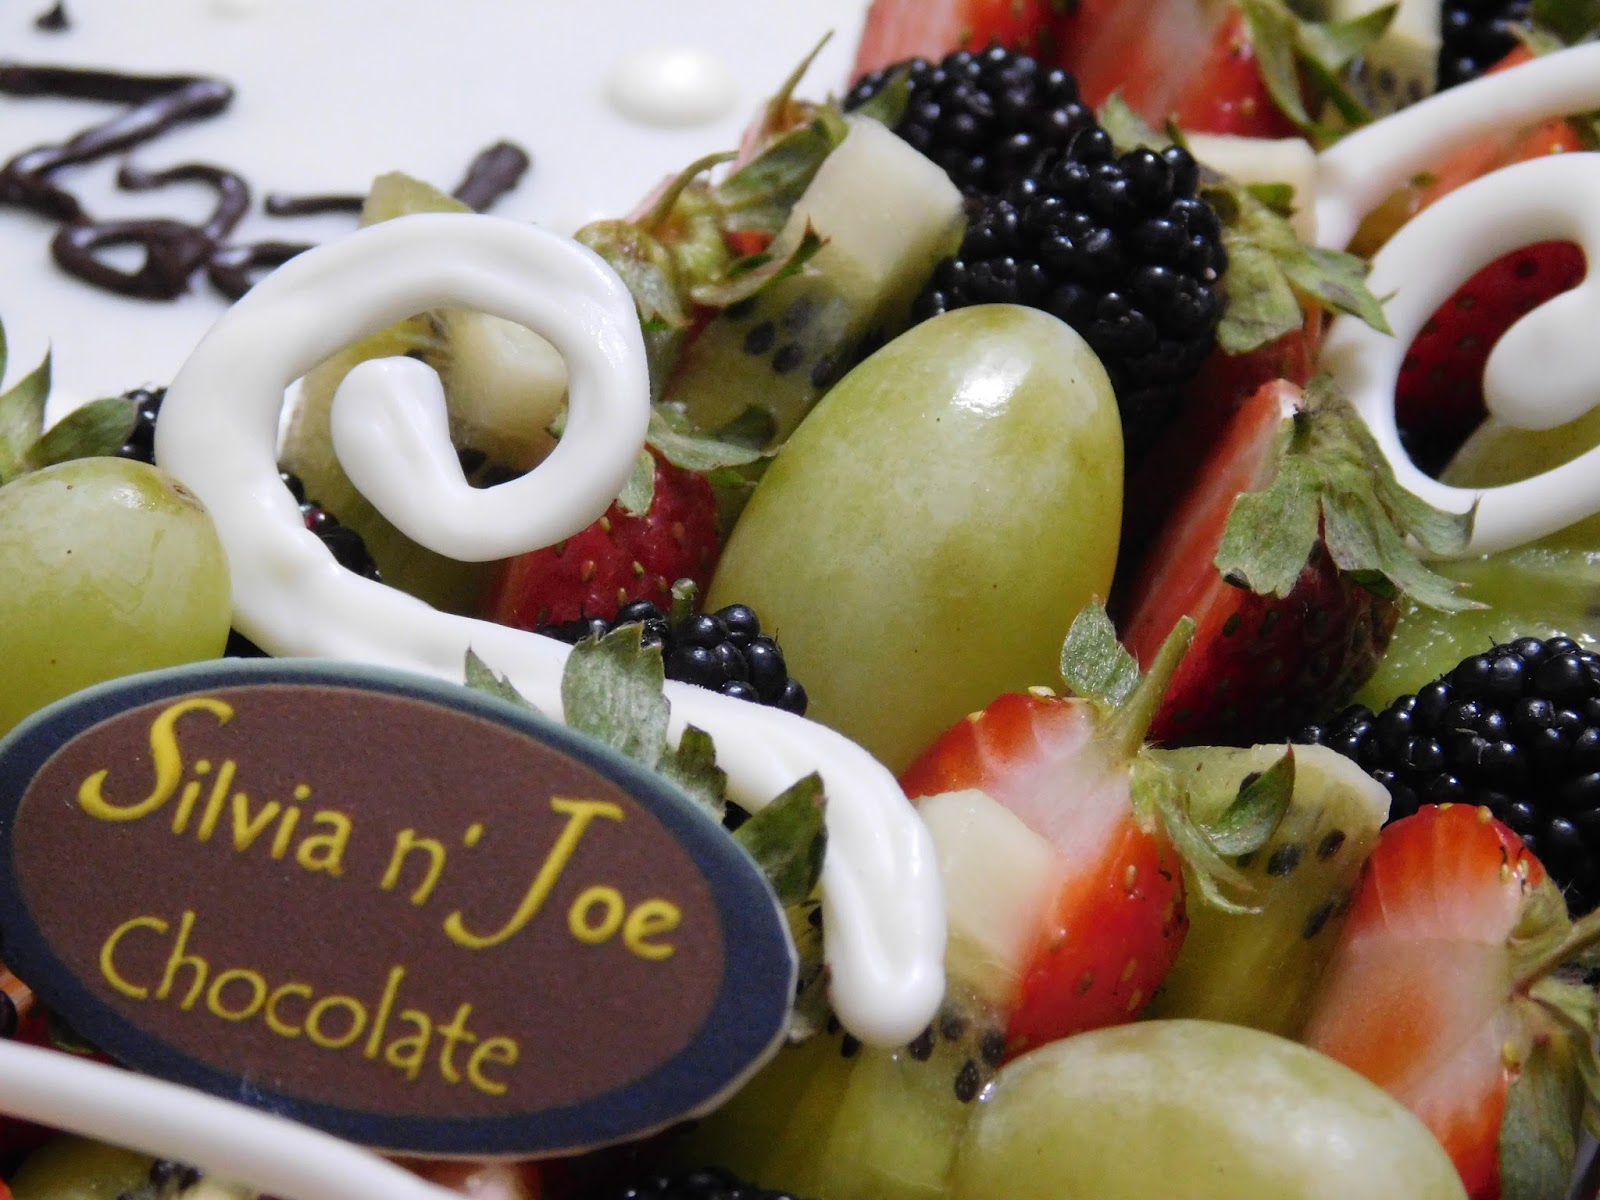 Kisah Sukses Bisnis Coklat Silvia n' Joe Chocolate, Terinspirasi Hadiah dari Fans 1